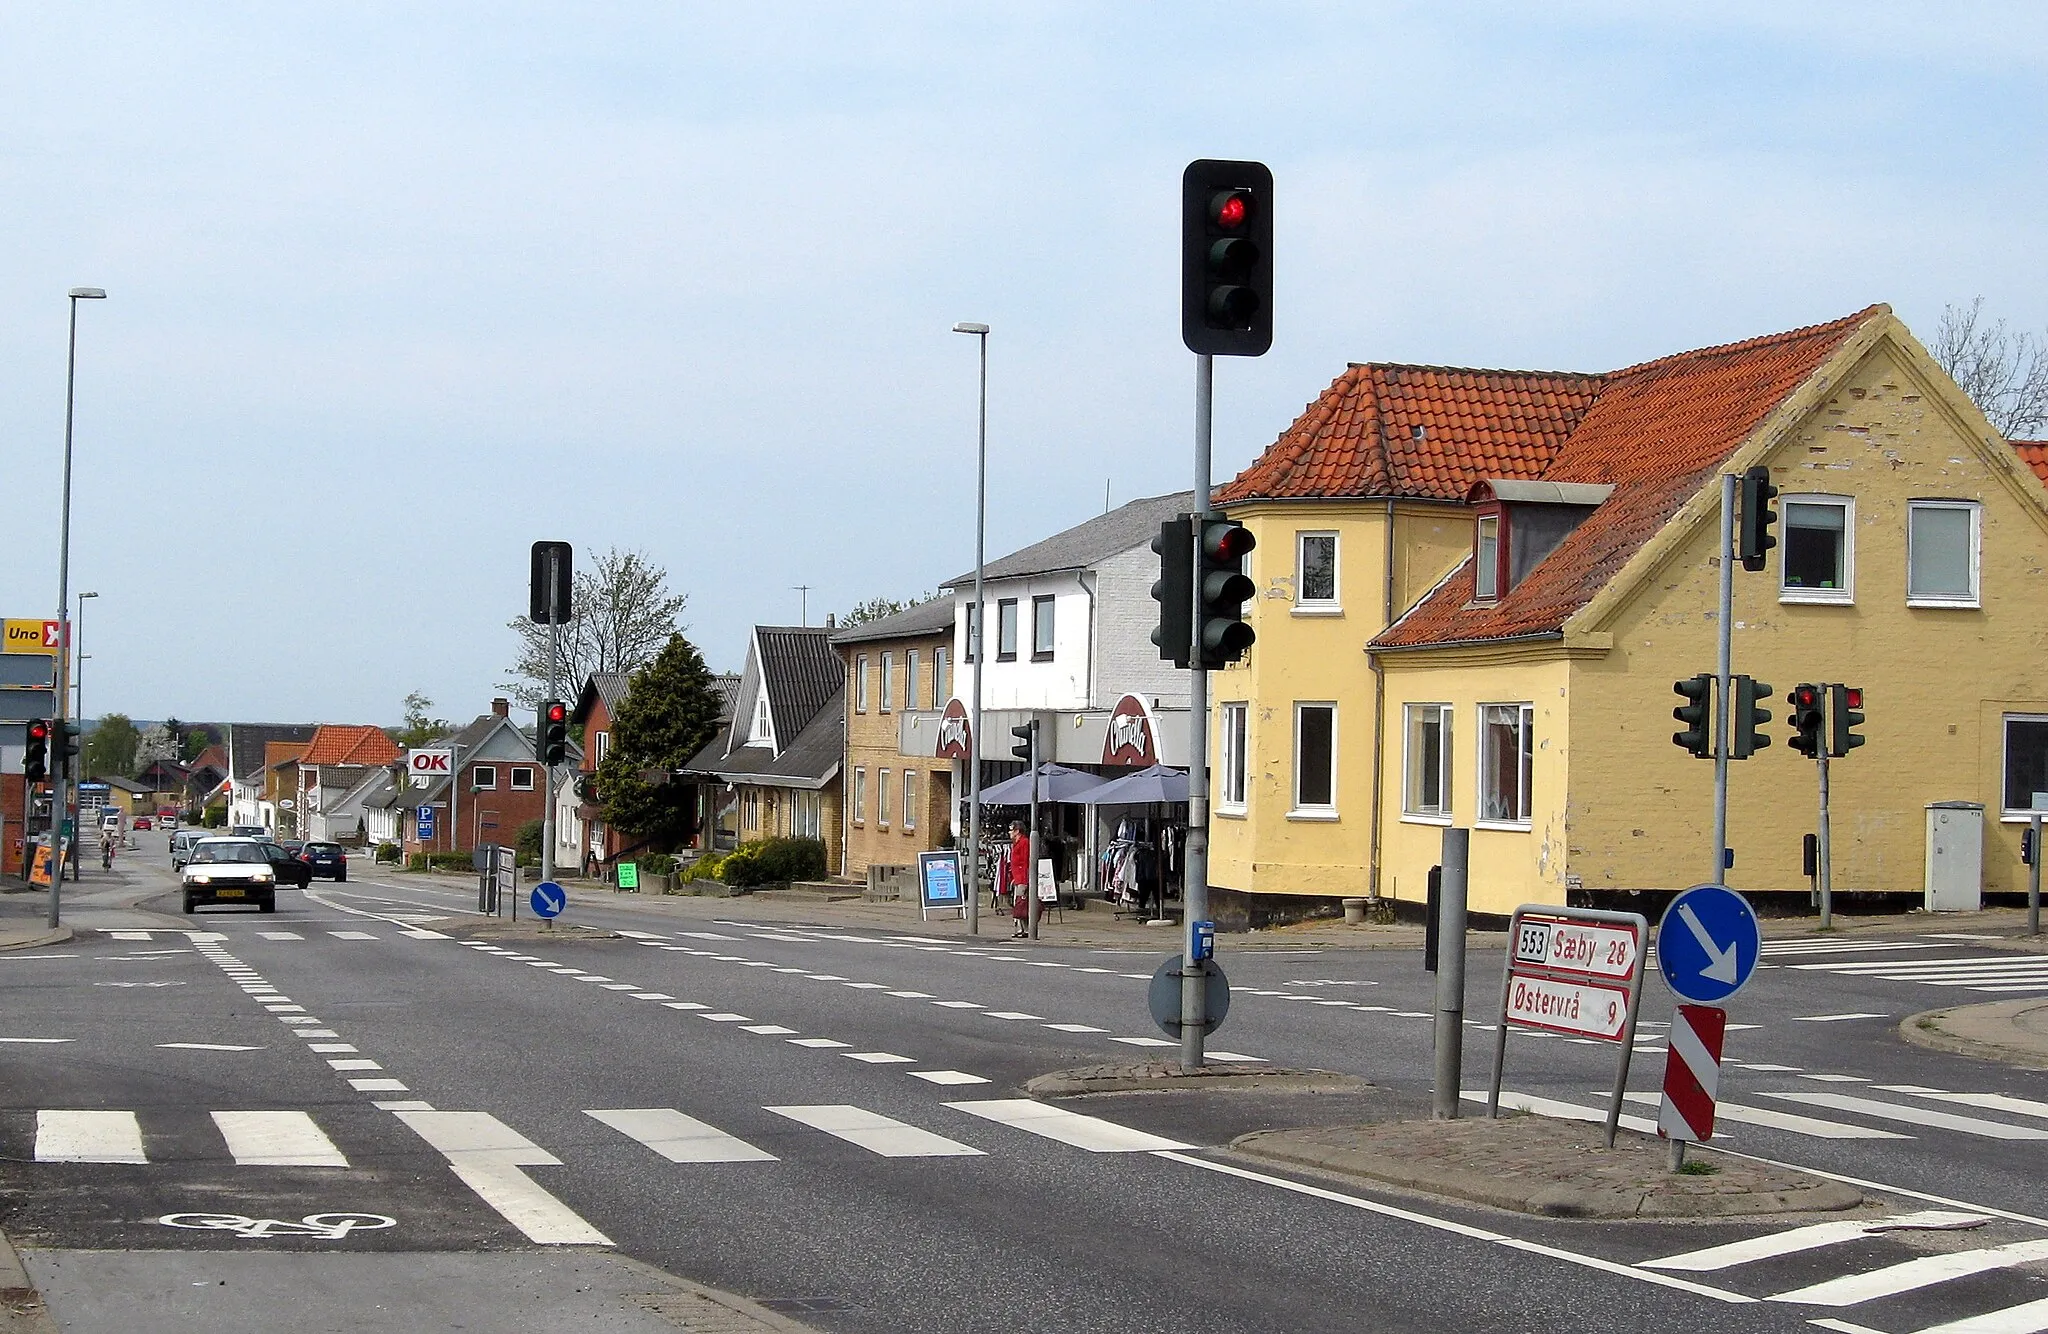 Image of Nordjylland